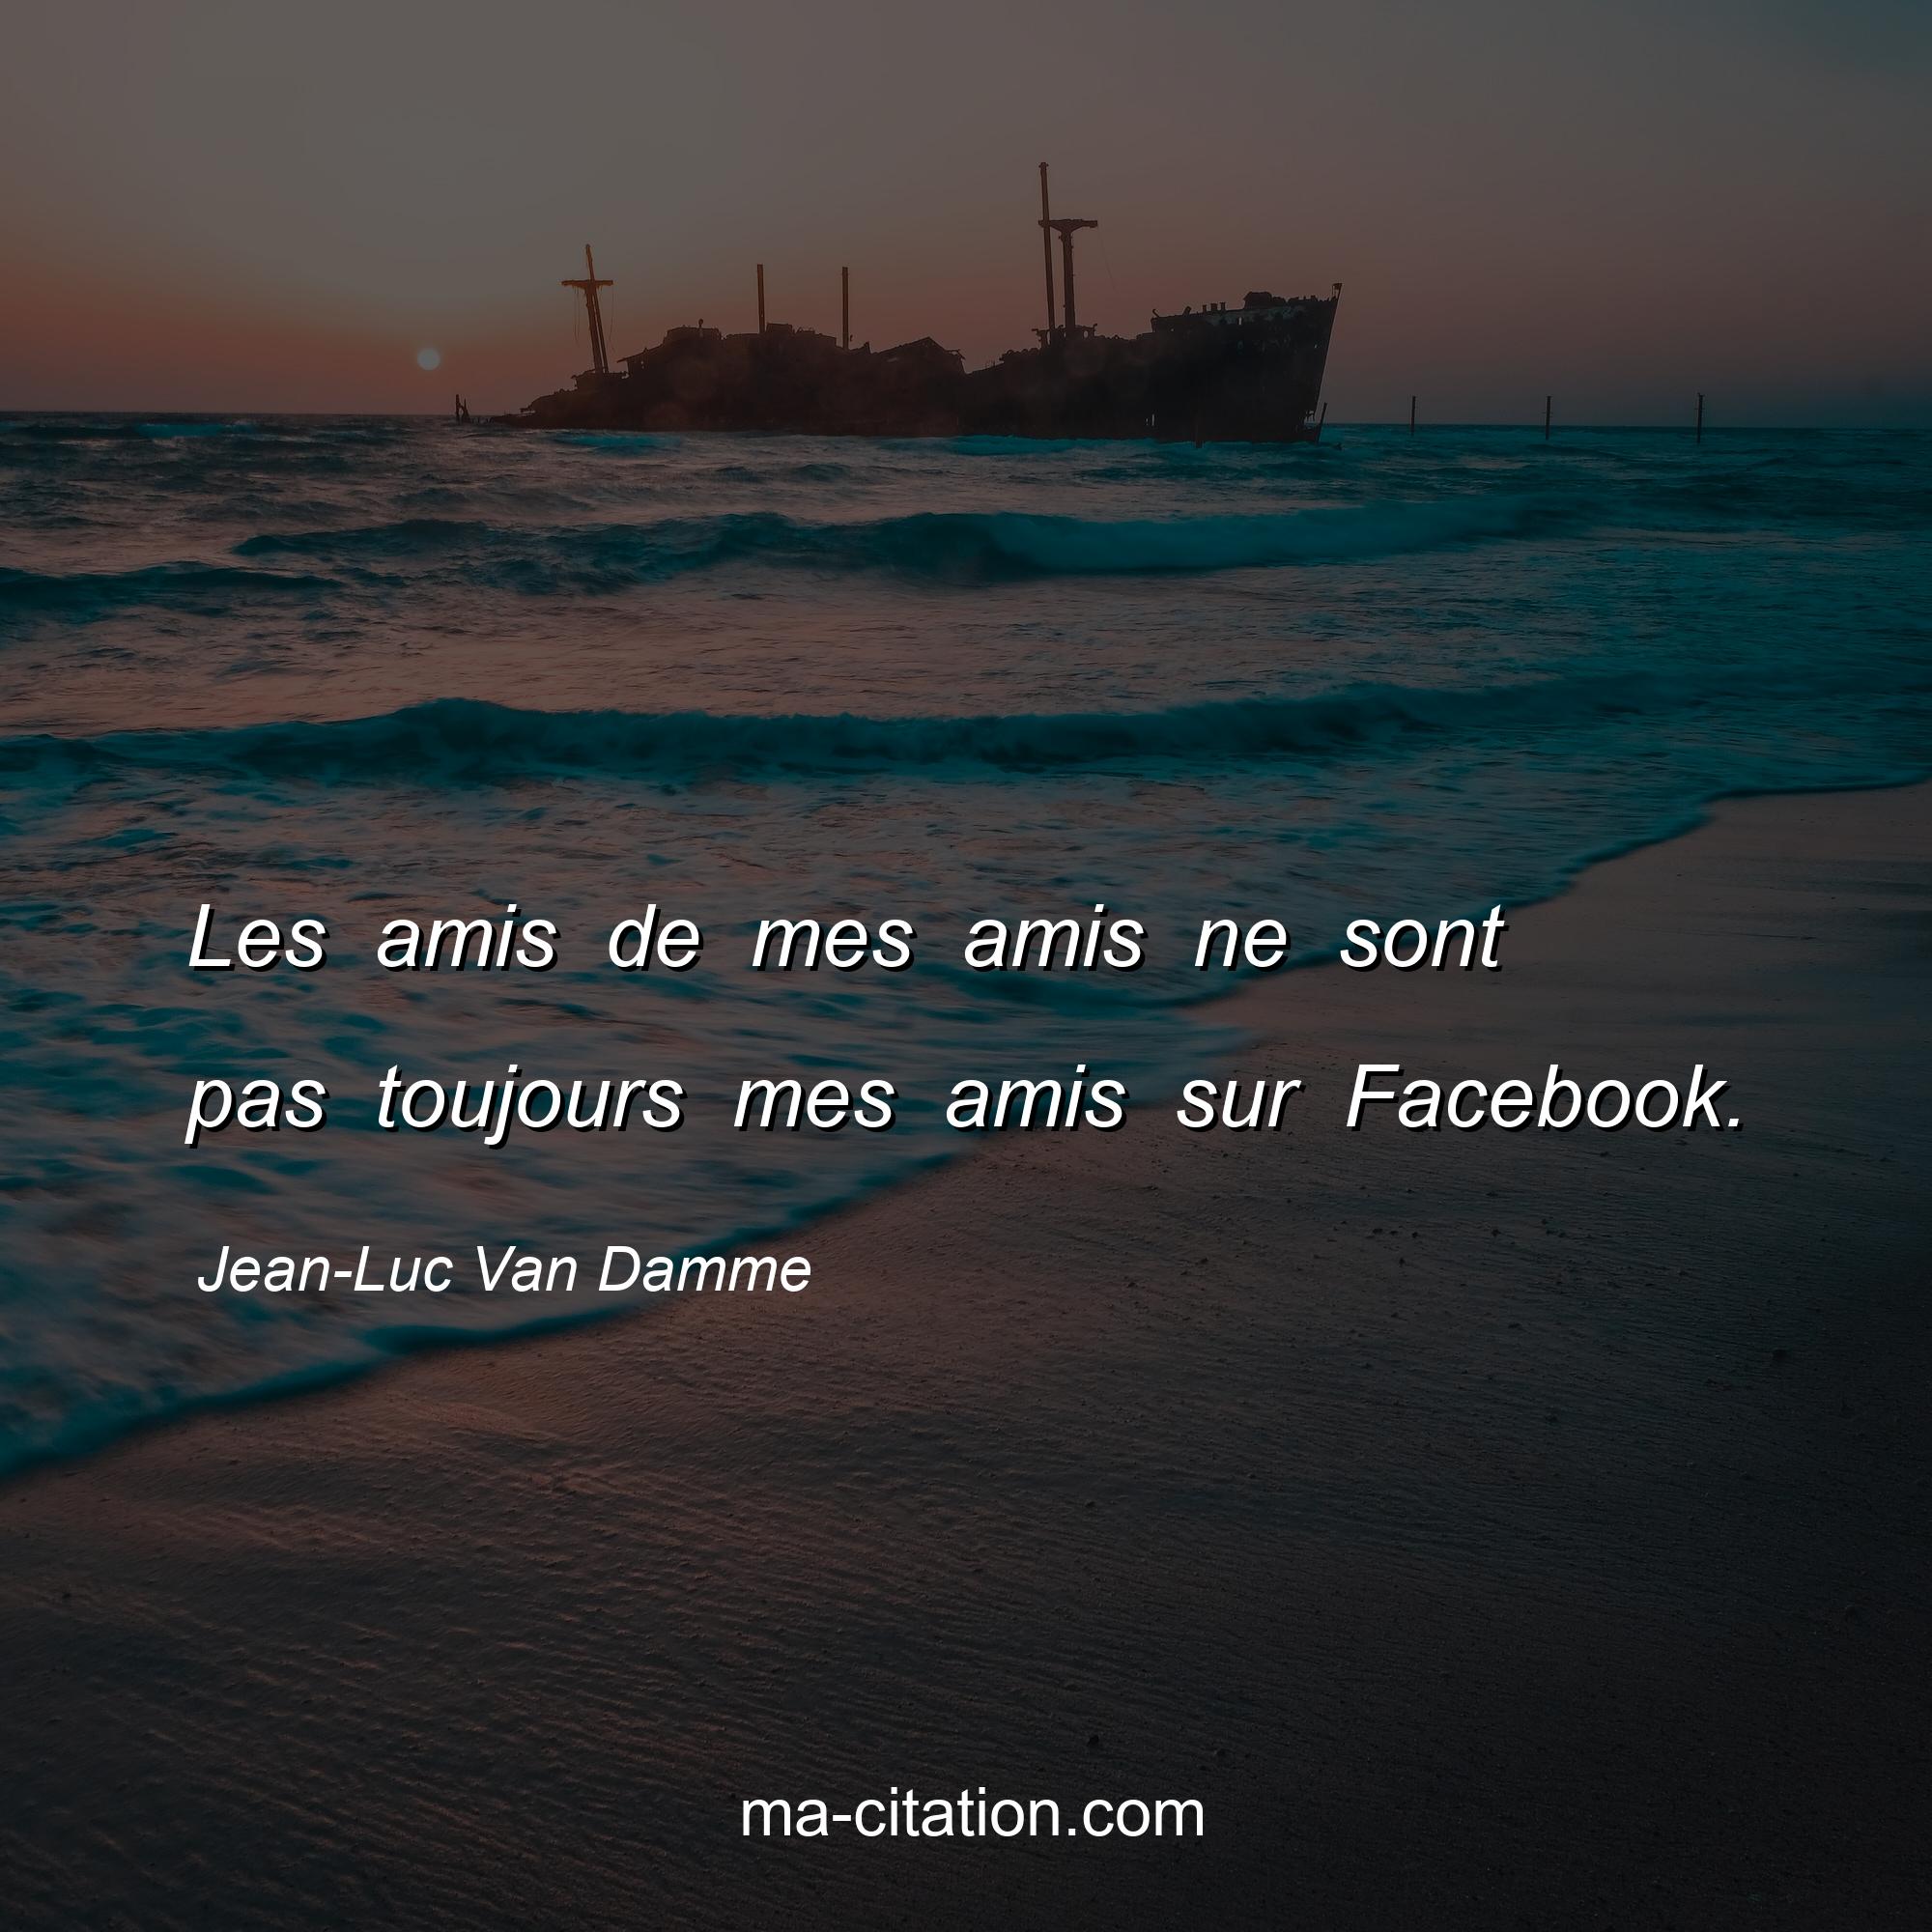 Jean-Luc Van Damme : Les amis de mes amis ne sont pas toujours mes amis sur Facebook.